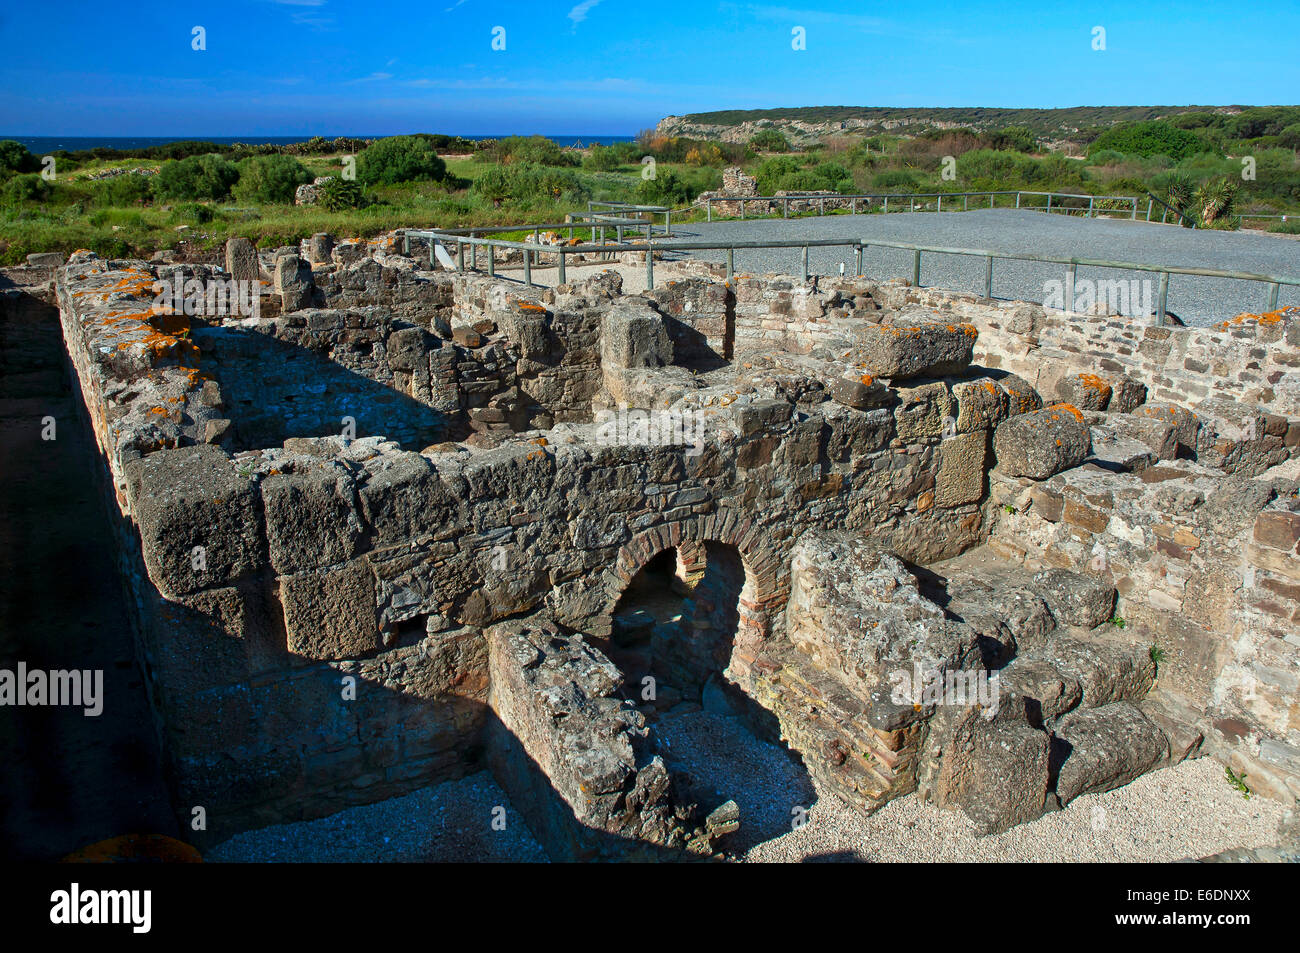 Le rovine romane di Baelo Claudia -2secolo BC- therm, Tarifa, Cadice provincia, regione dell'Andalusia, Spagna, Europa Foto Stock